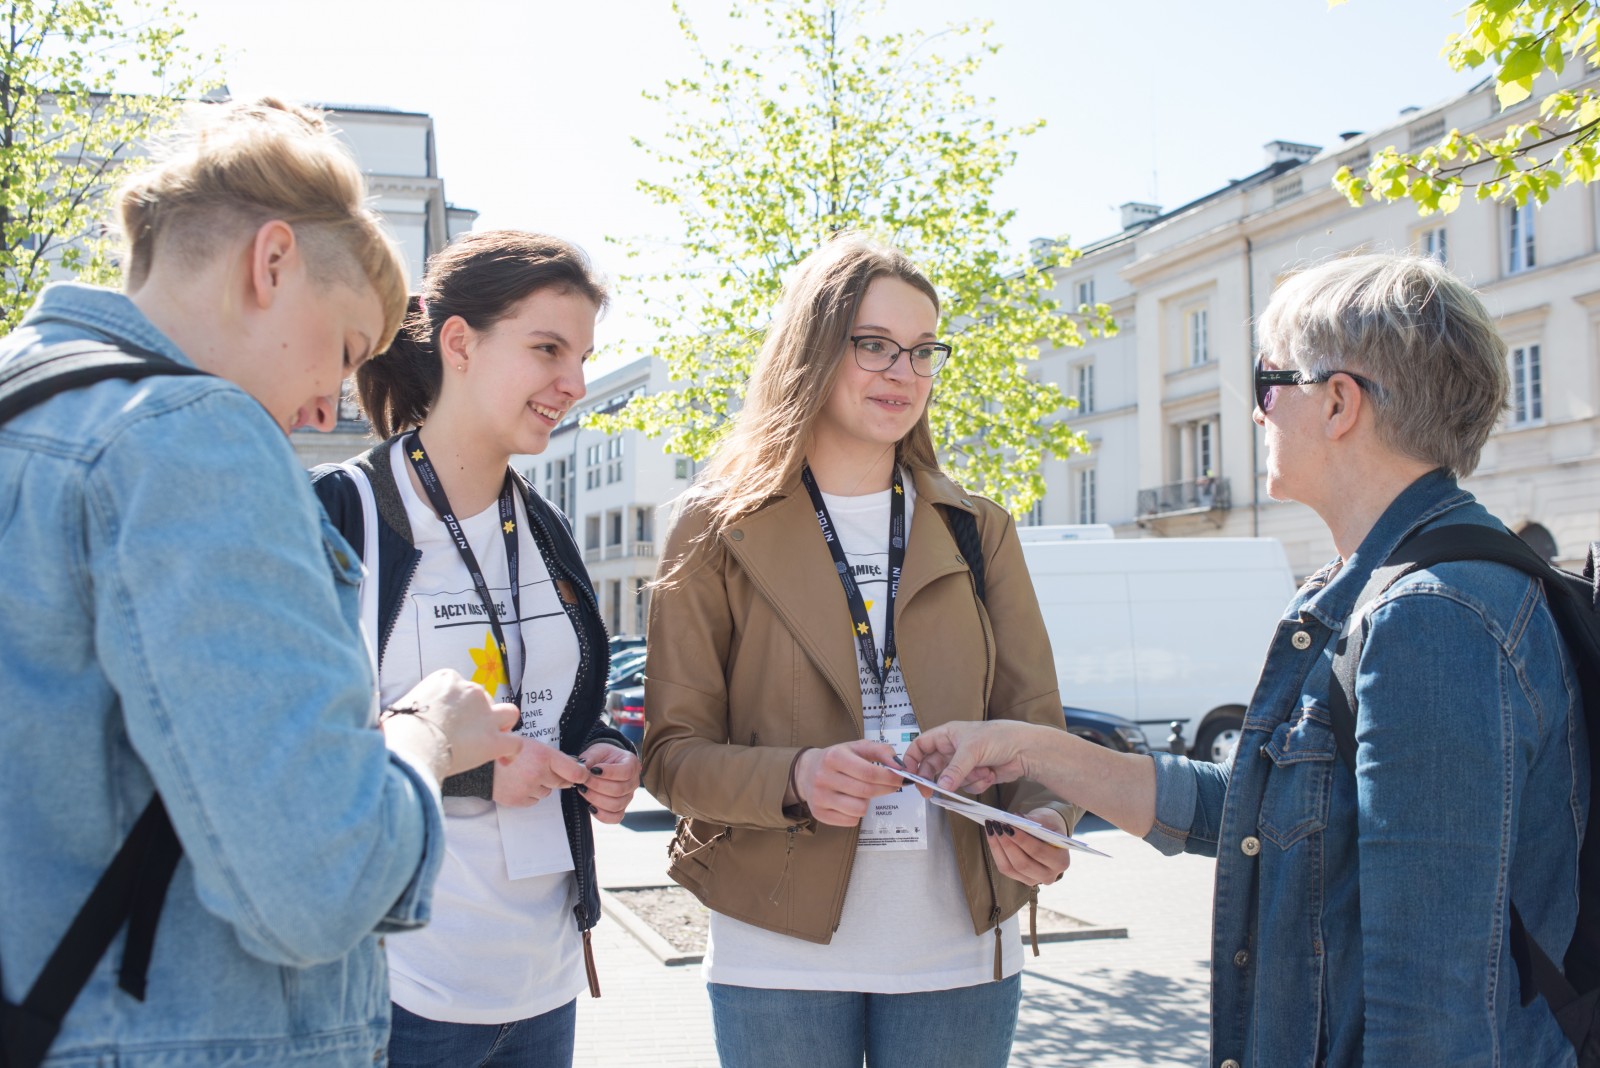 Wolontariusze akcji społeczno-edukacyjnej Żonkile 2018 rozdają papierowe żonkile przechodniom.